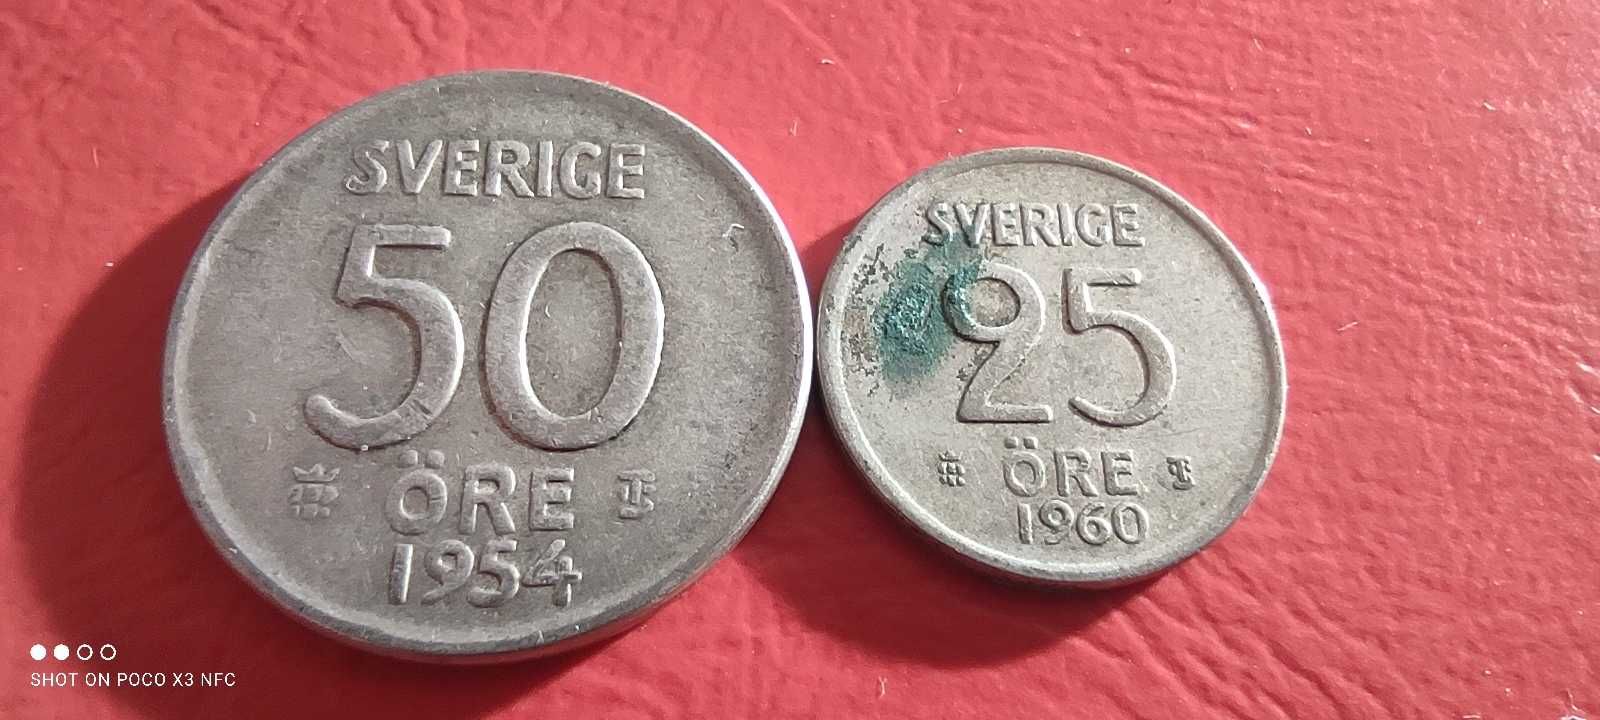 Zestaw monet srebrnych Szwecja 25 i 50 ore 1954 i 60 srebro ag